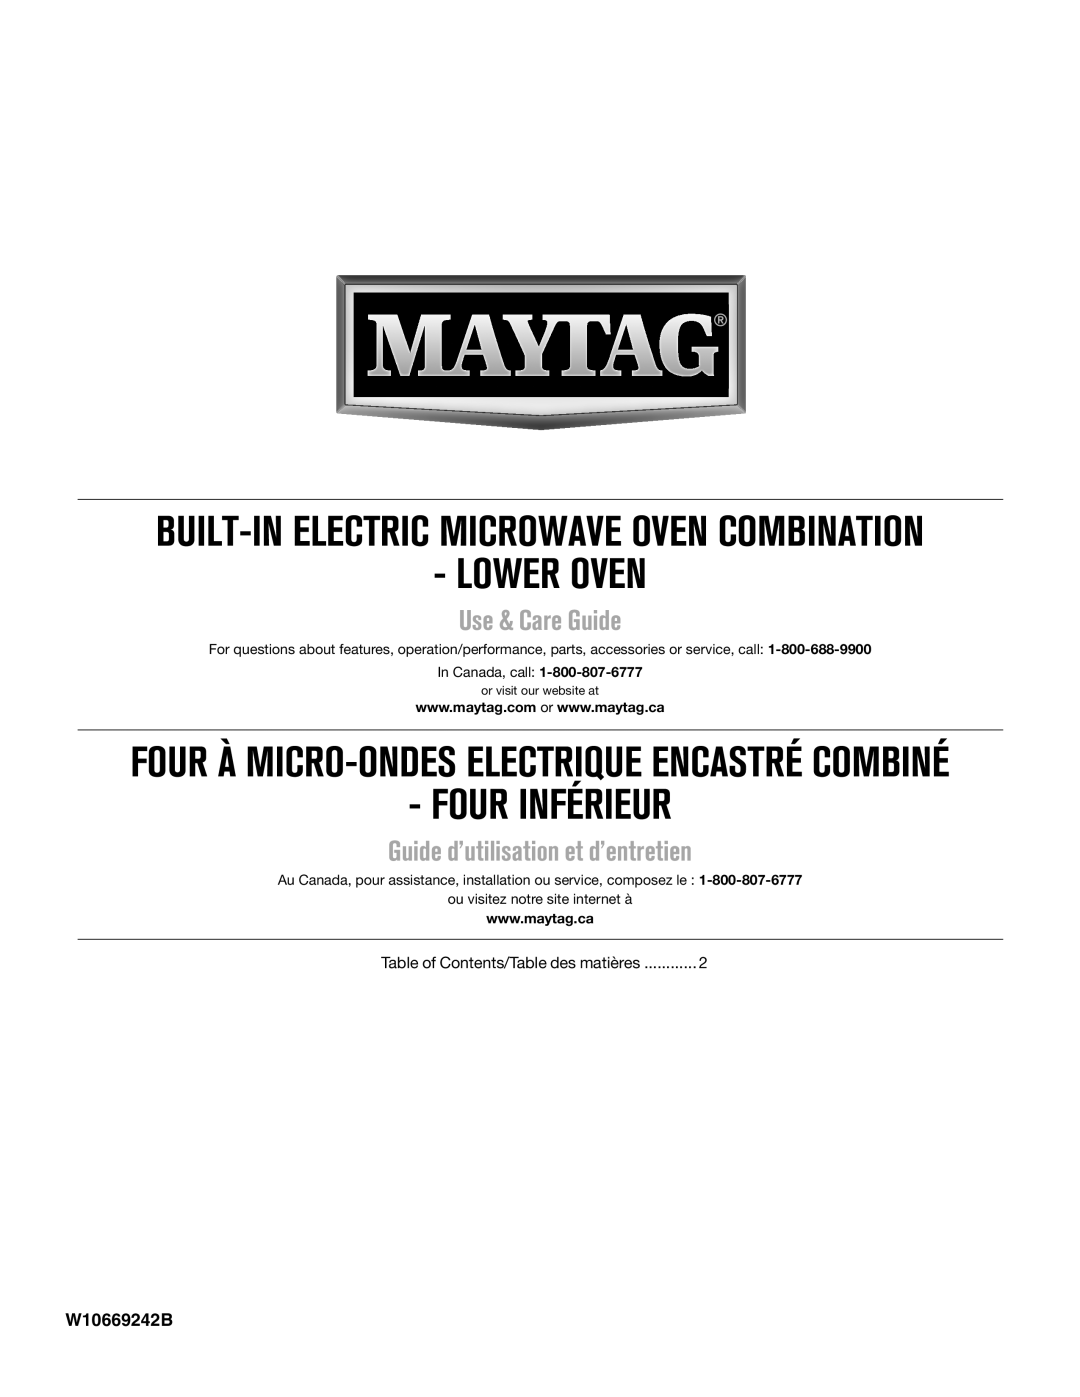 Maytag W10669242B manual Four À Micro-Ondeselectrique Encastré Combiné, Lower Oven, Four Inférieur, Use & Care Guide 